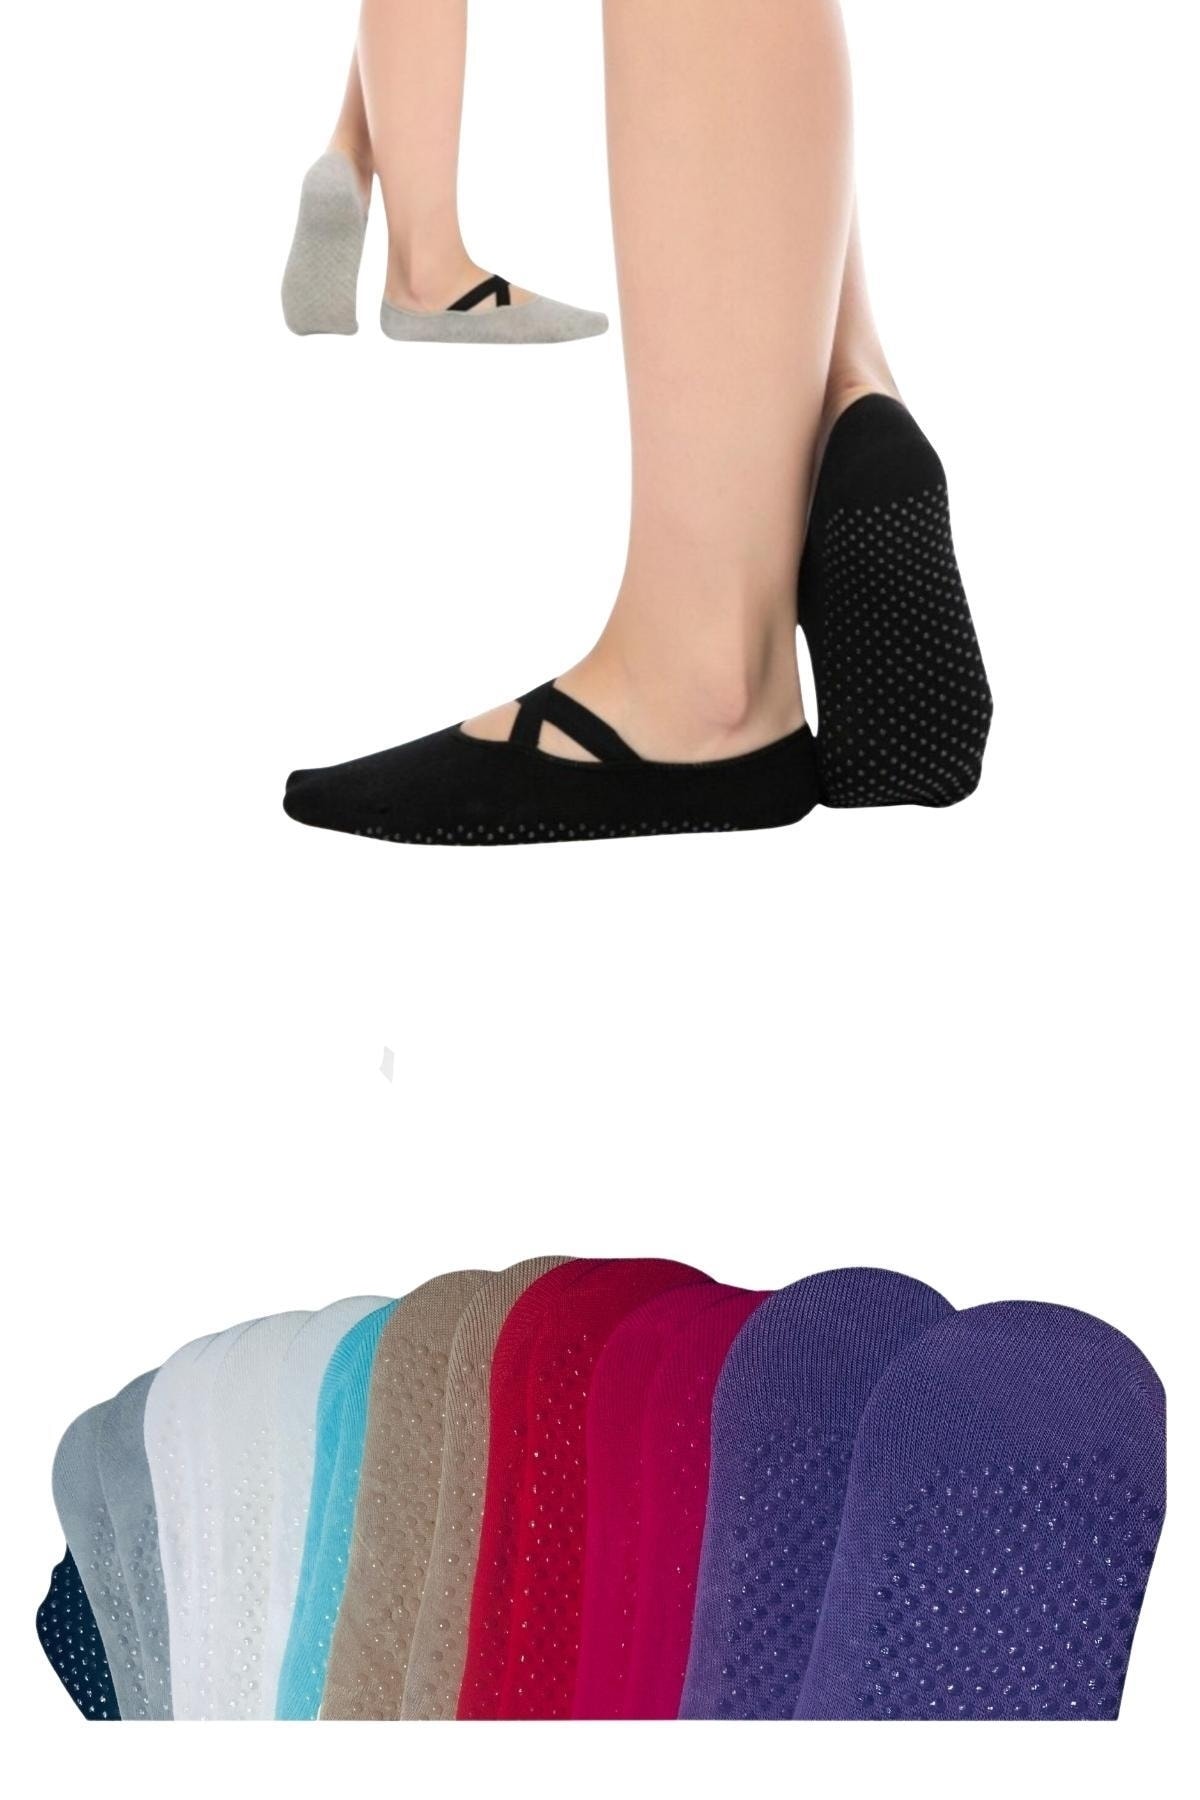 OverPazar 3'lü Tampap Kaydırmaz Pilates Yoga Çorabı Kadın Çorabı Kısa Çorap Spor Çorap Dans Çorabı